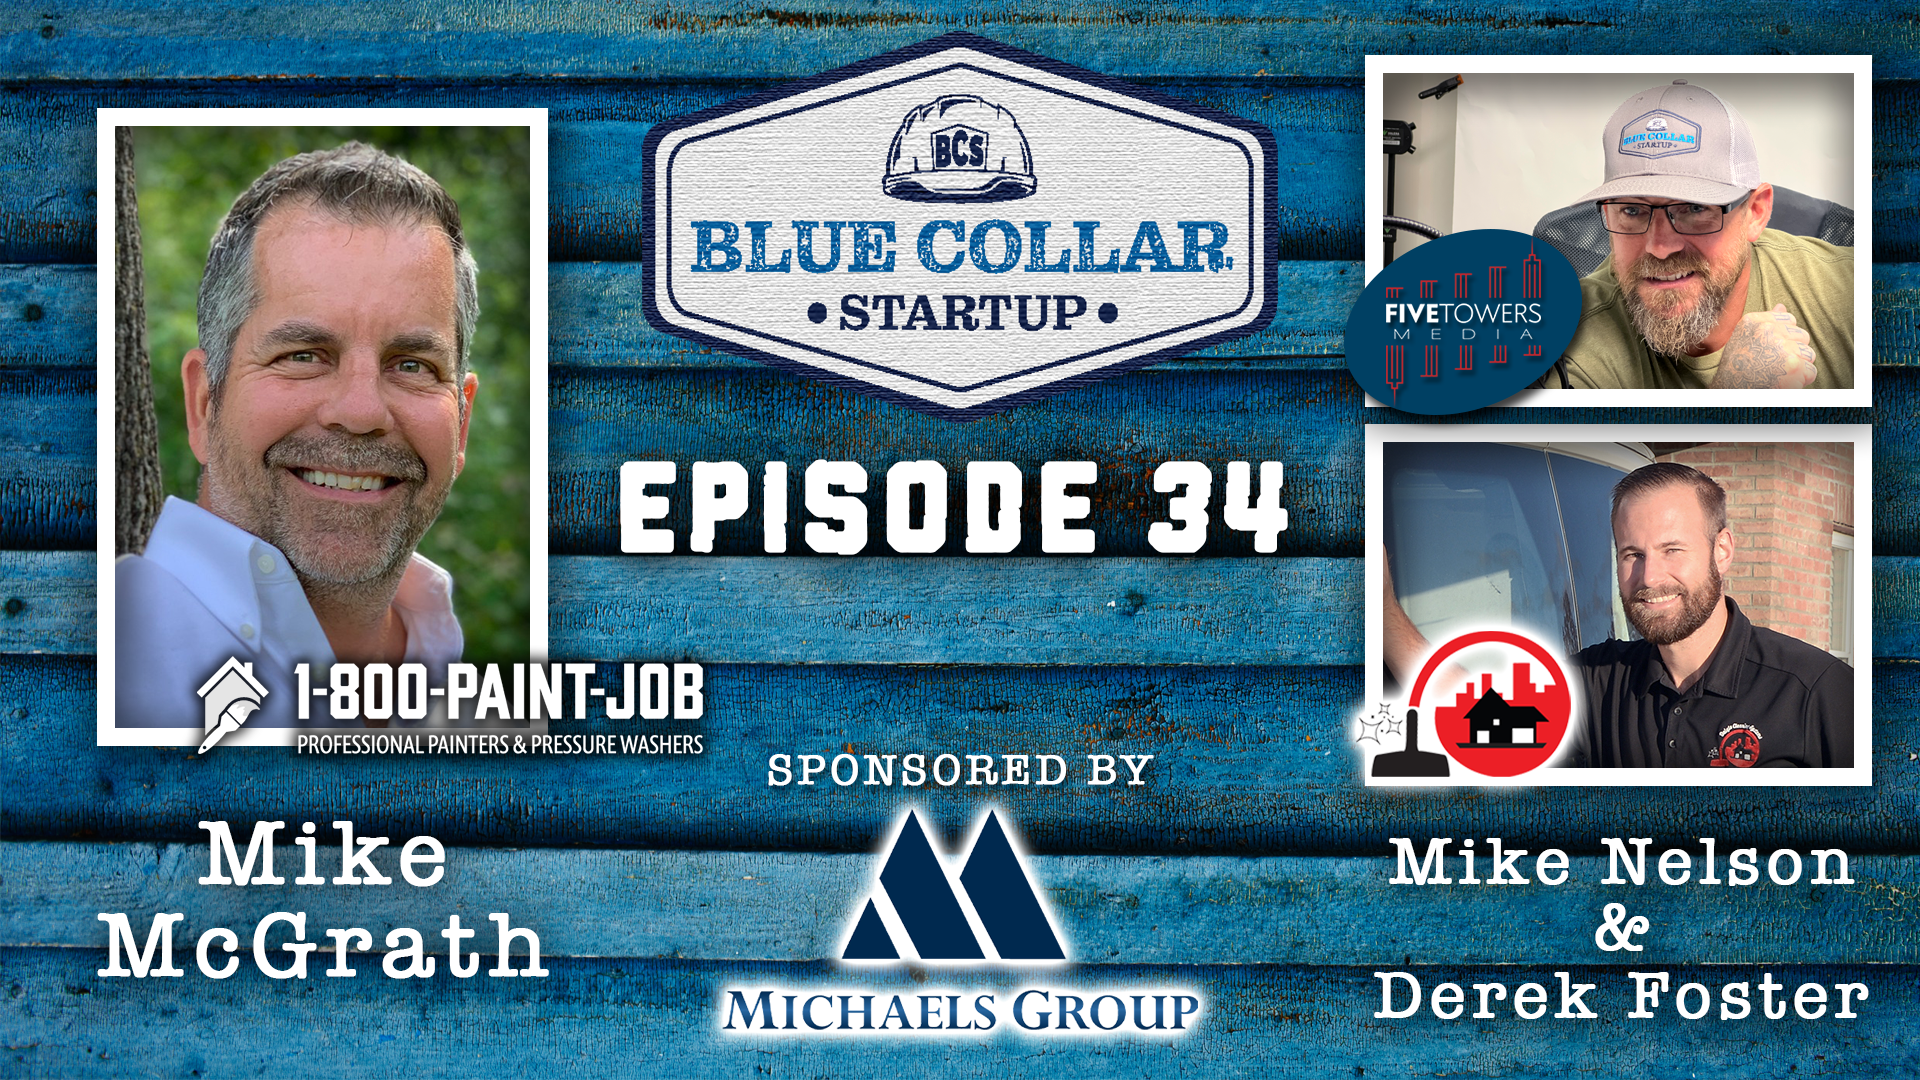 Episode 34: Mike McGrath (1-800-Paint-Job)